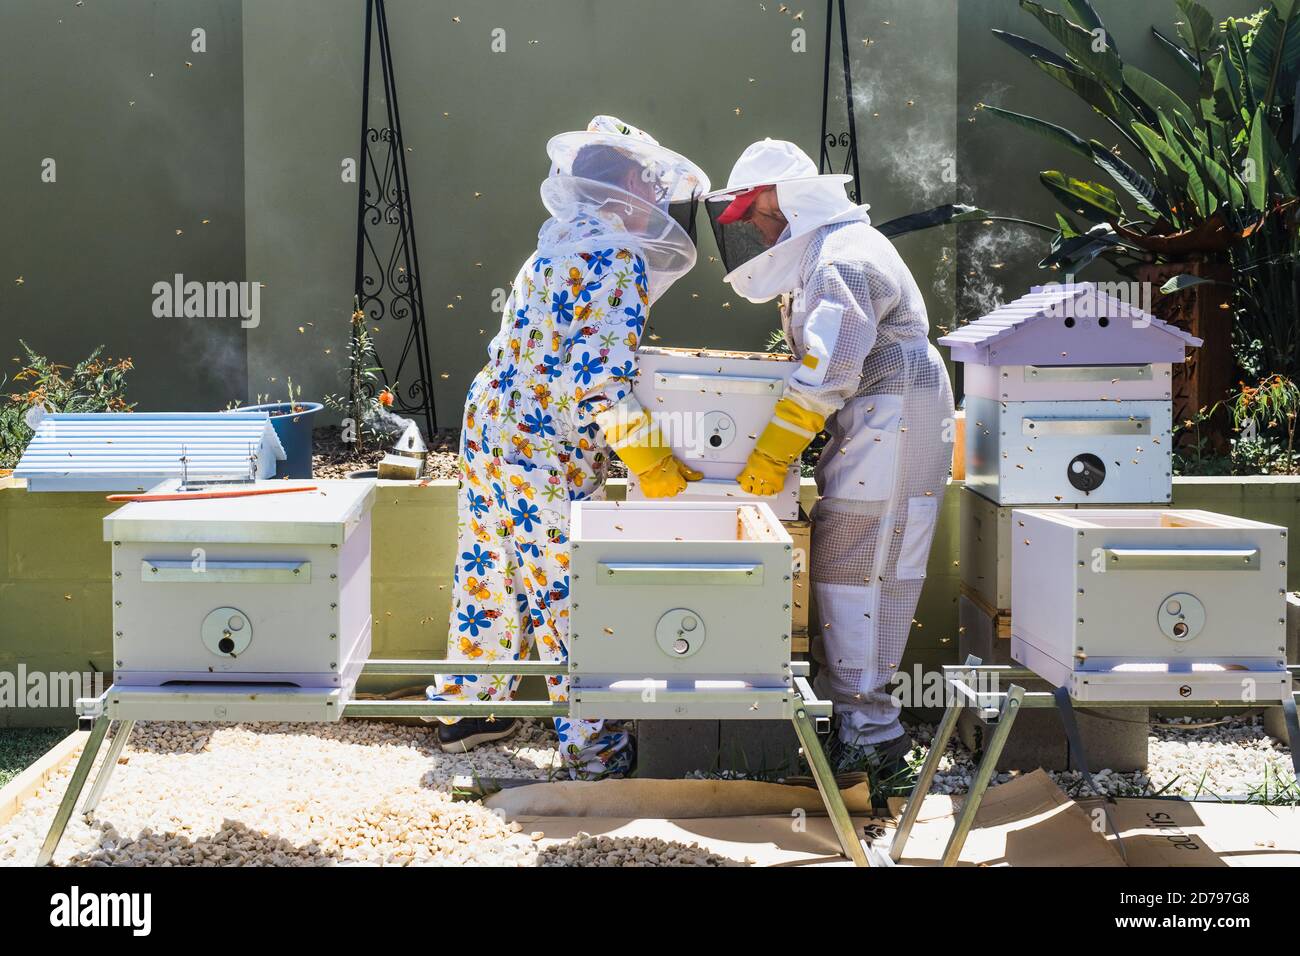 Imker Kontrolle Bienenstock und Kamm Rahmen, Ernte Honig. Bienenzuchtkonzept. Stockfoto